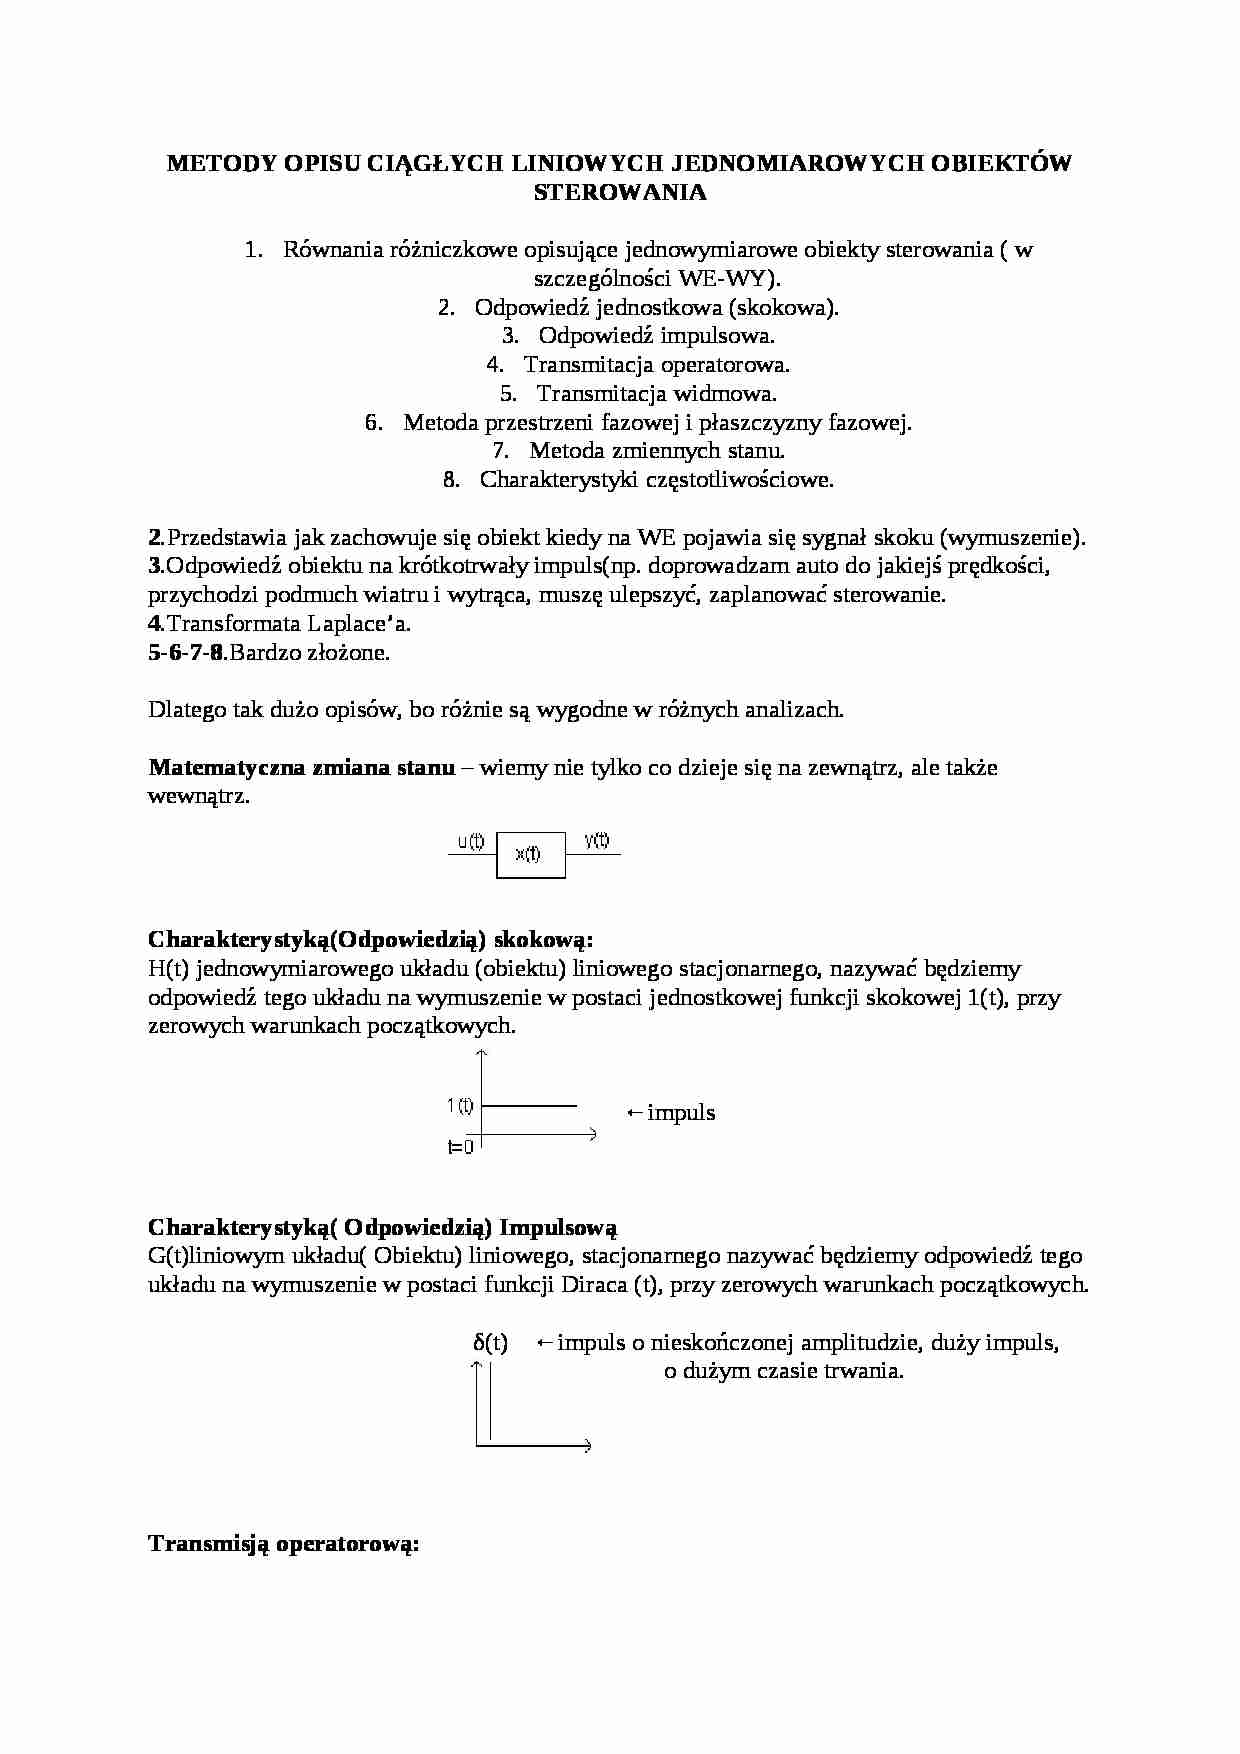 Metody opisu ciągłych liniowych jednomiarowych obiektów sterowania-opracowanie - strona 1